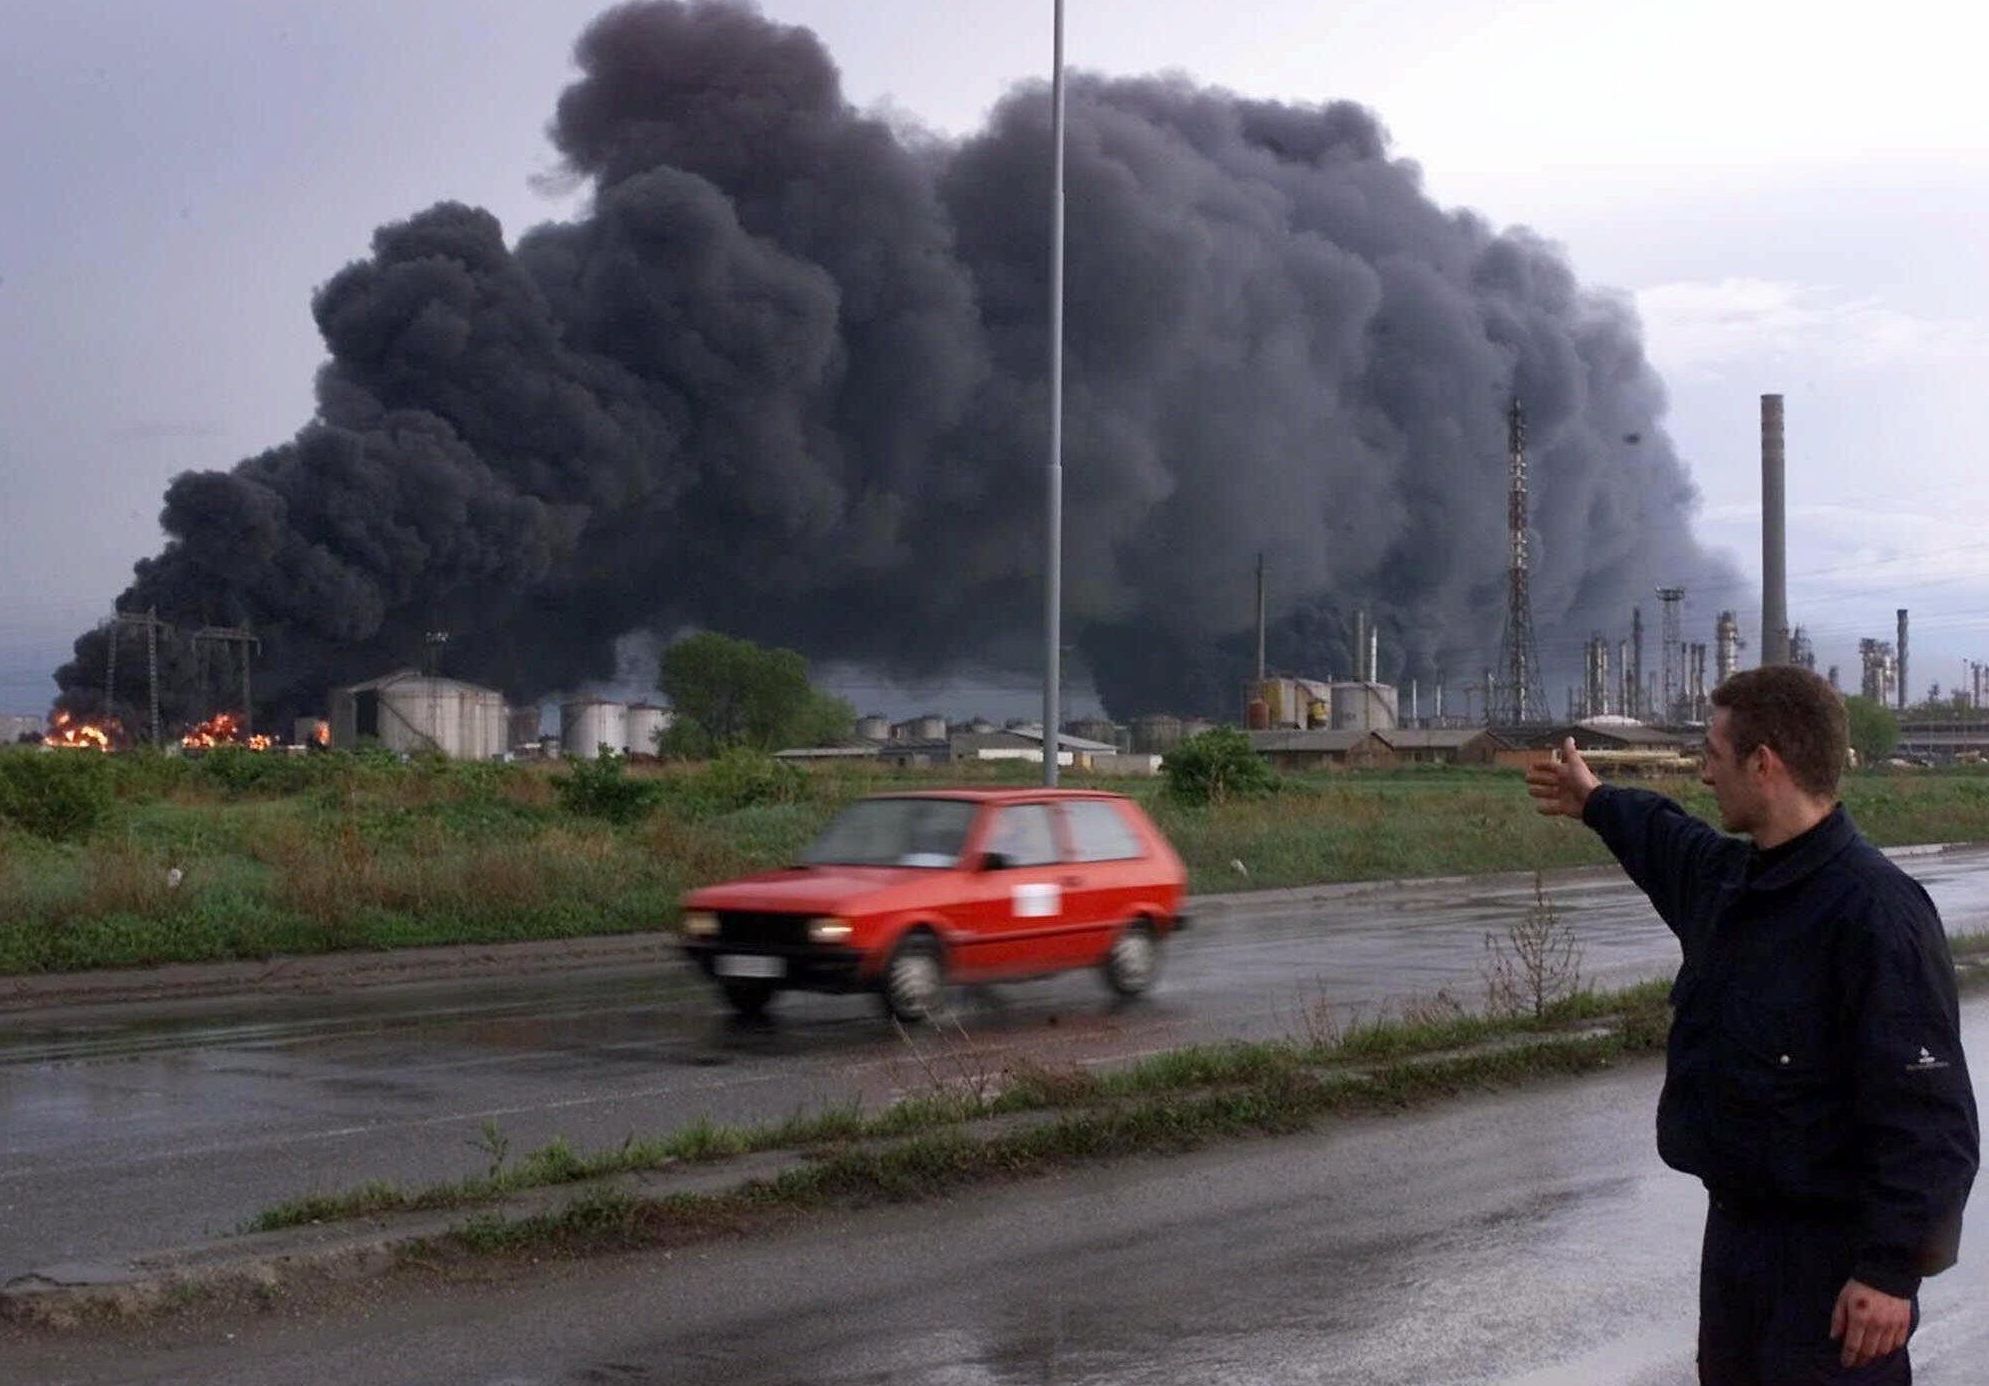 Сотрудник службы безопасности указывает на горящие резервуары нефтеперерабатывающего завода в Панчево после бомбардировки НАТО, 18 апреля 1999 года